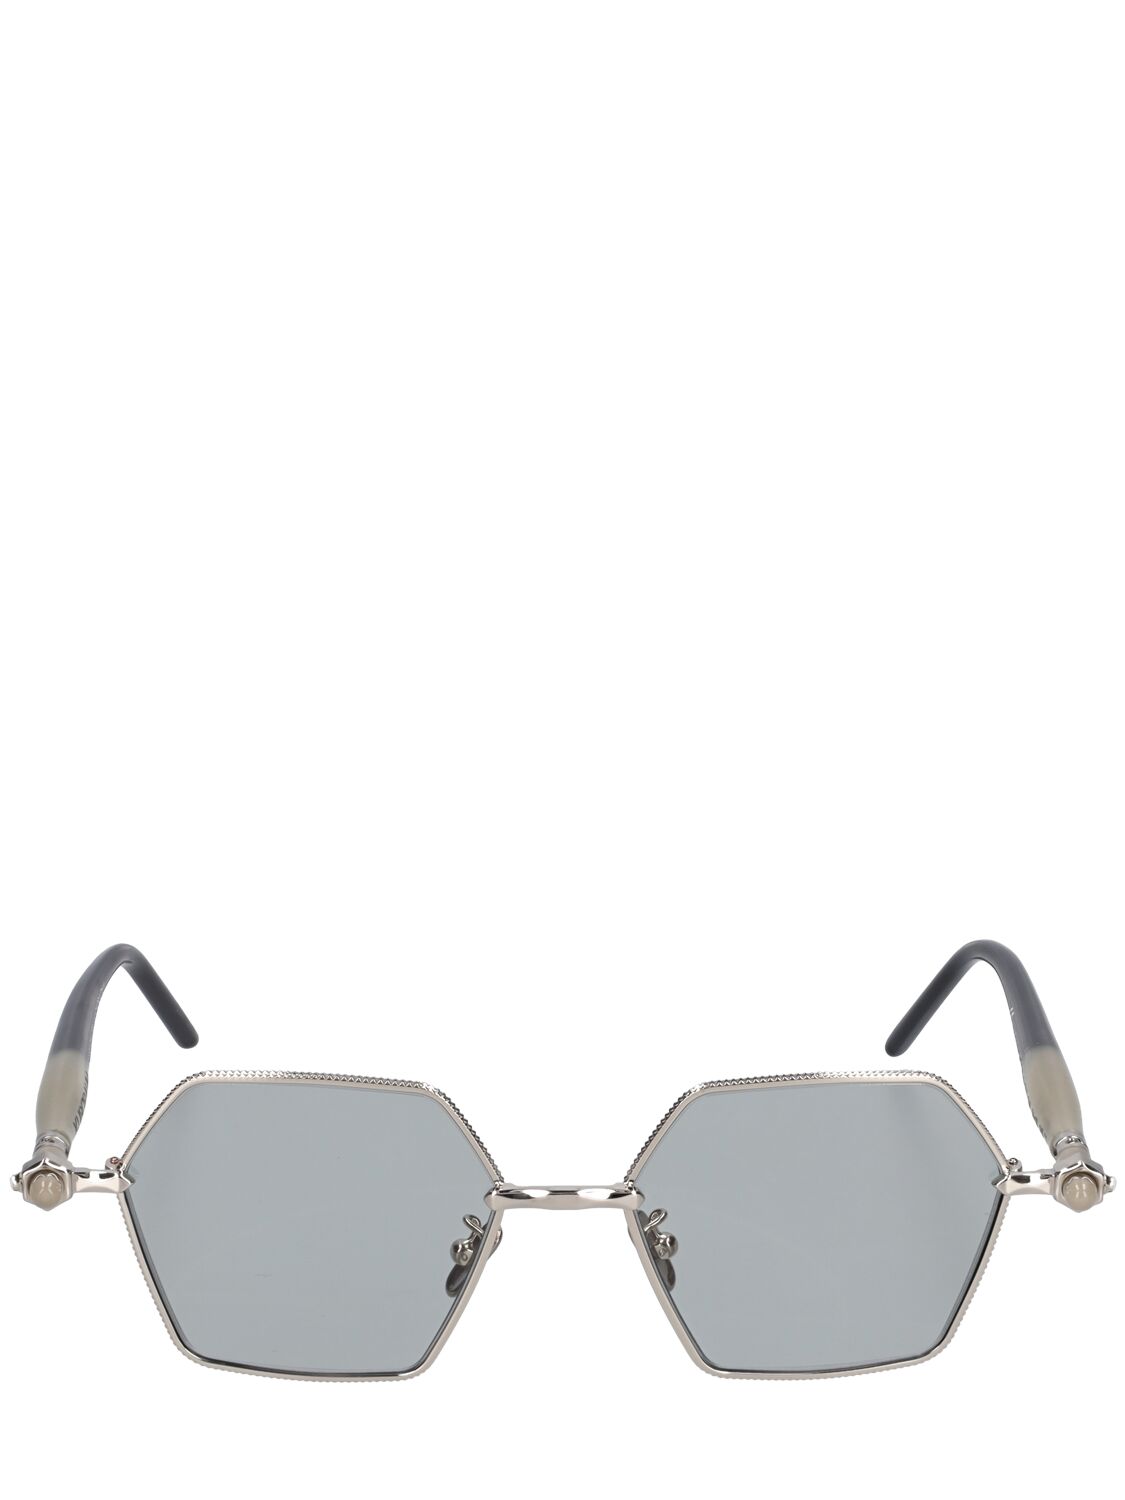 P70 Squared Metal Sunglasses